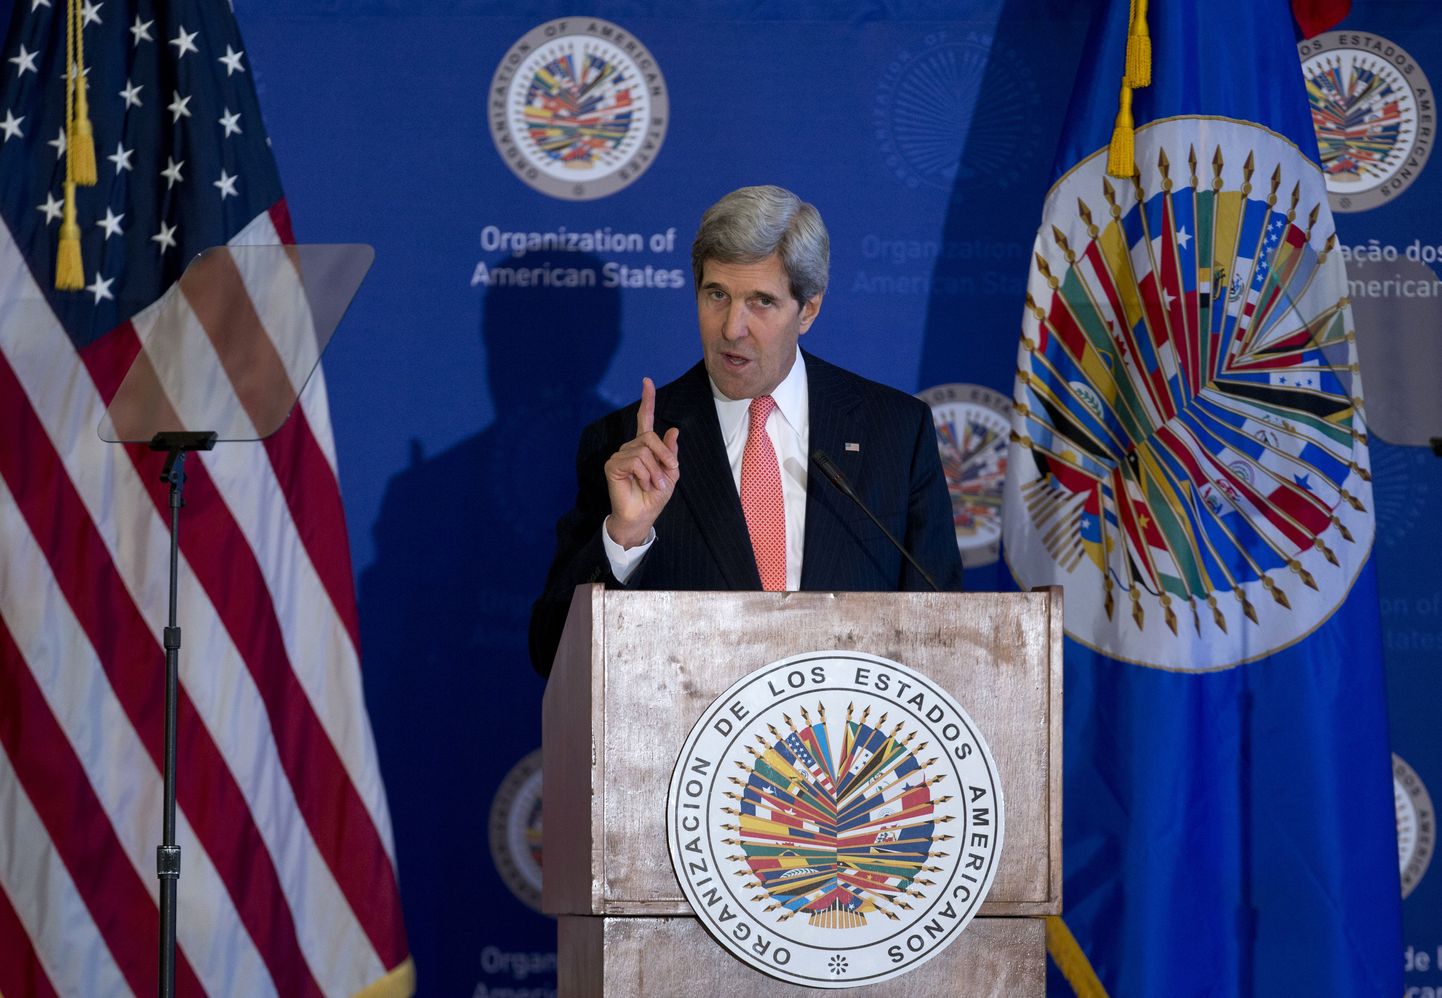 USA riigisekretär John Kerry Ameerika Riikide Ühenduse (OAS) peaassamblee kohtumisel.